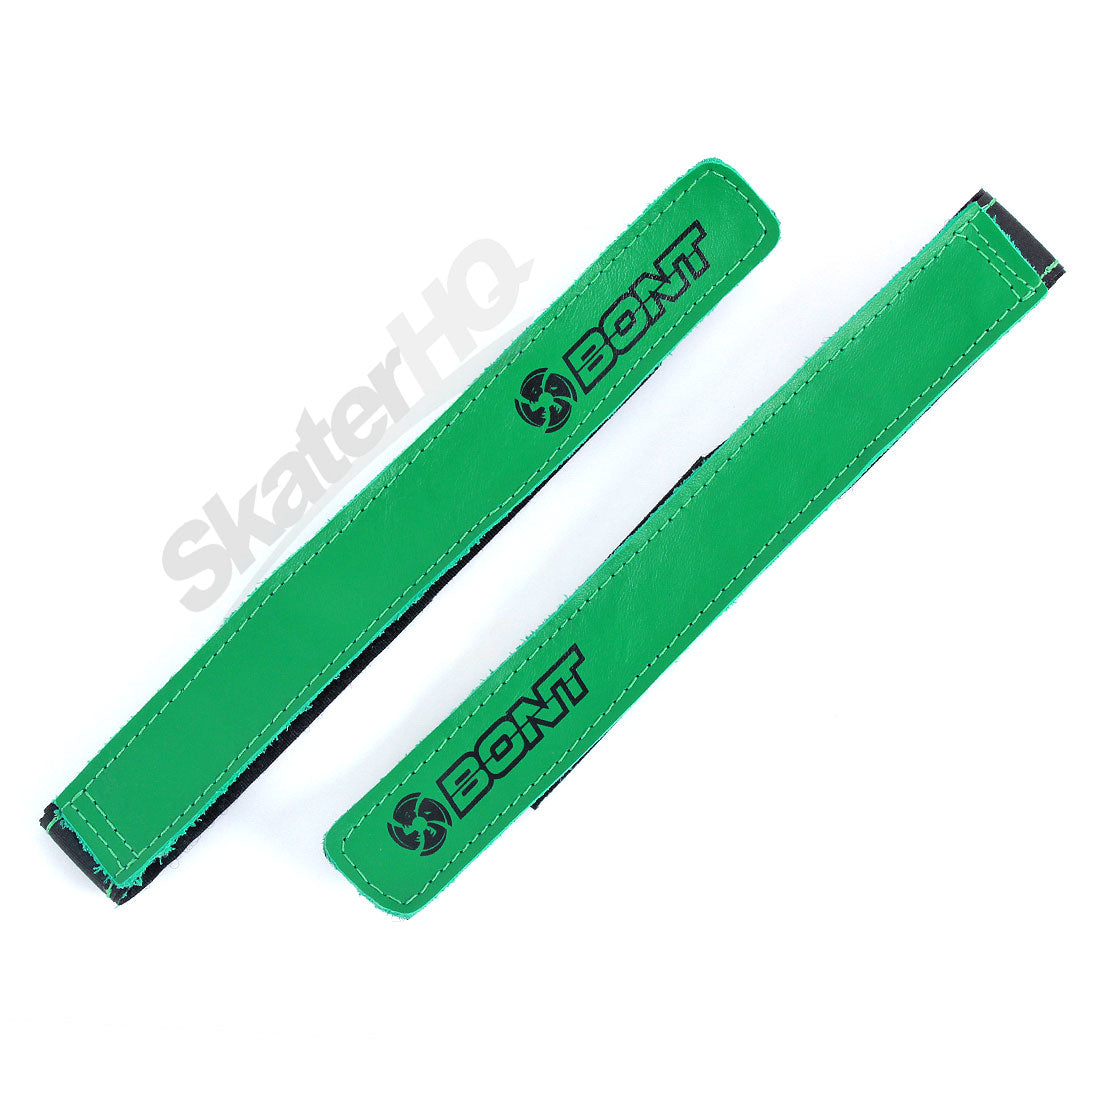 BONT Hybrid Quad Strap - Green Roller Skate Hardware and Parts